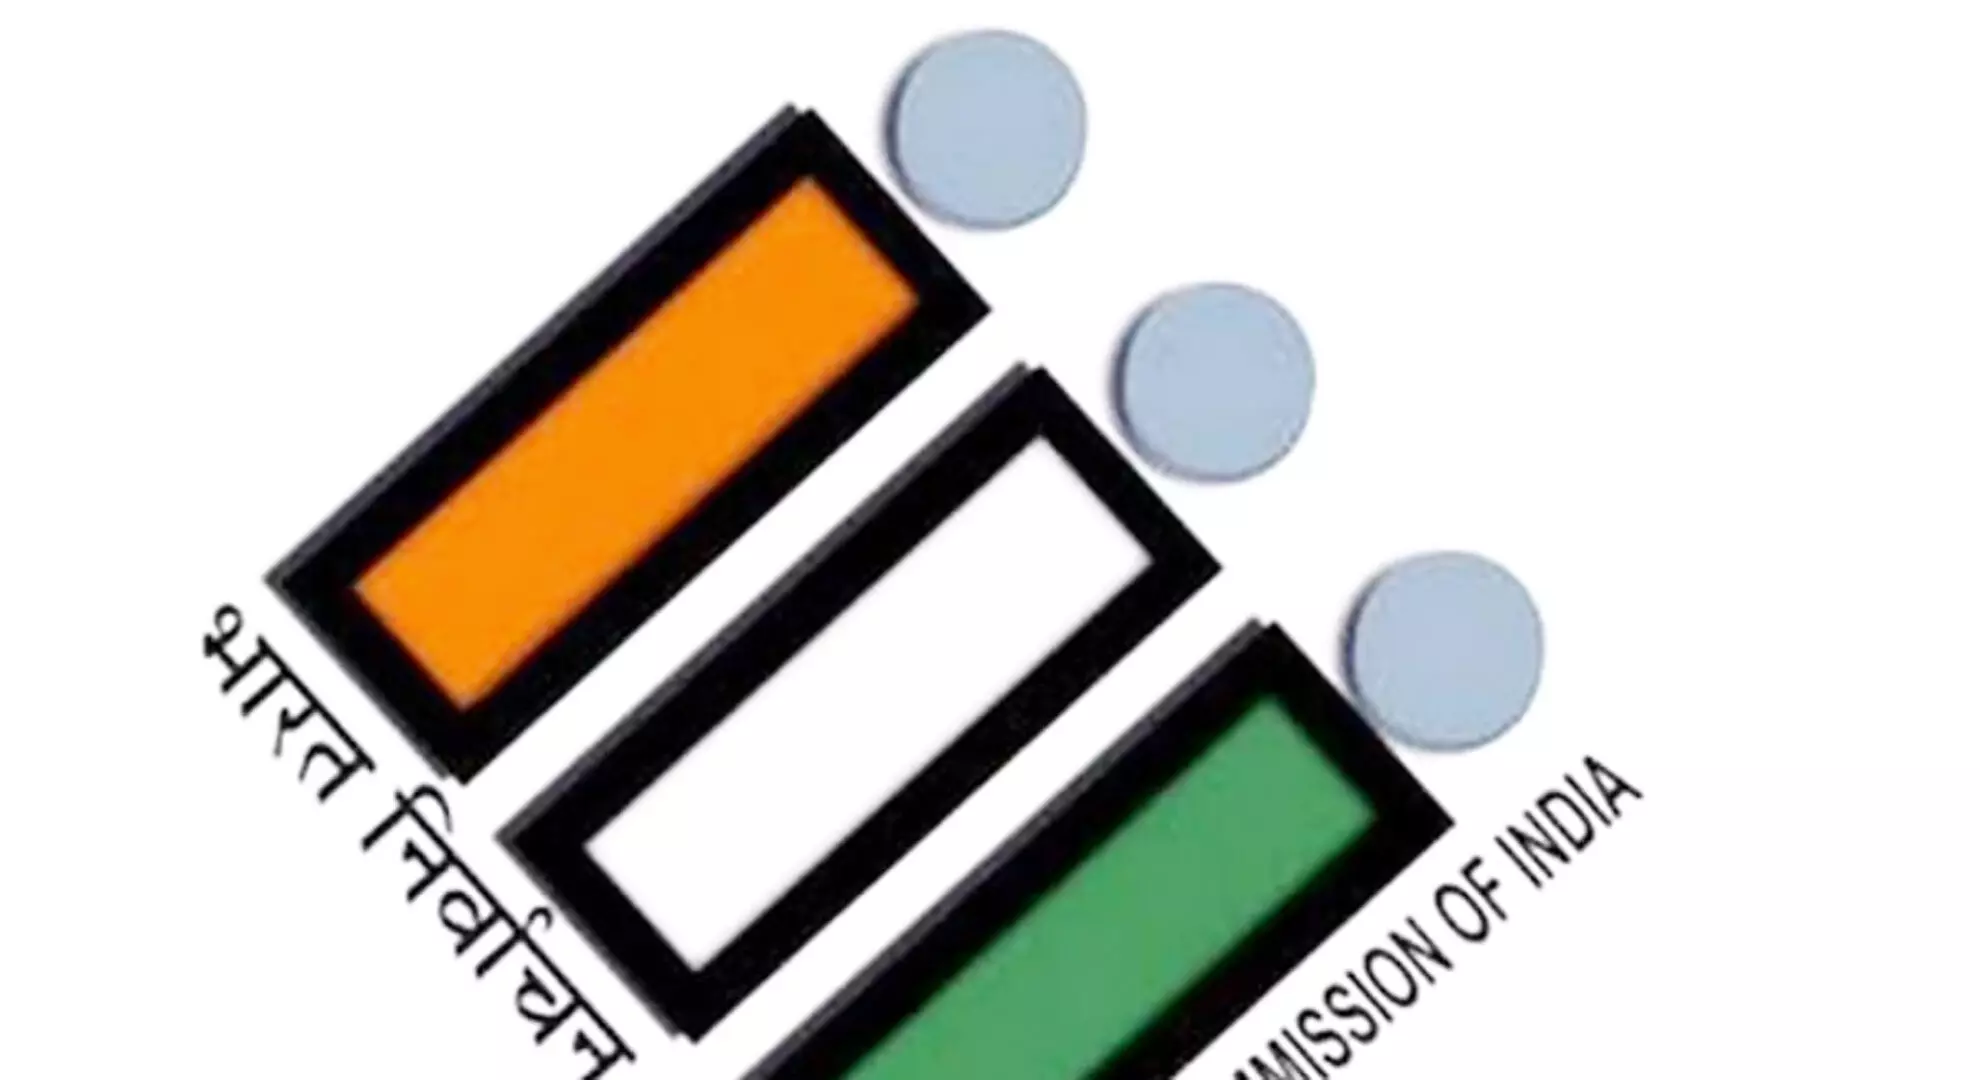 ECI ने आंध्र प्रदेश के लिए तीन विशेष पर्यवेक्षकों की नियुक्ति की